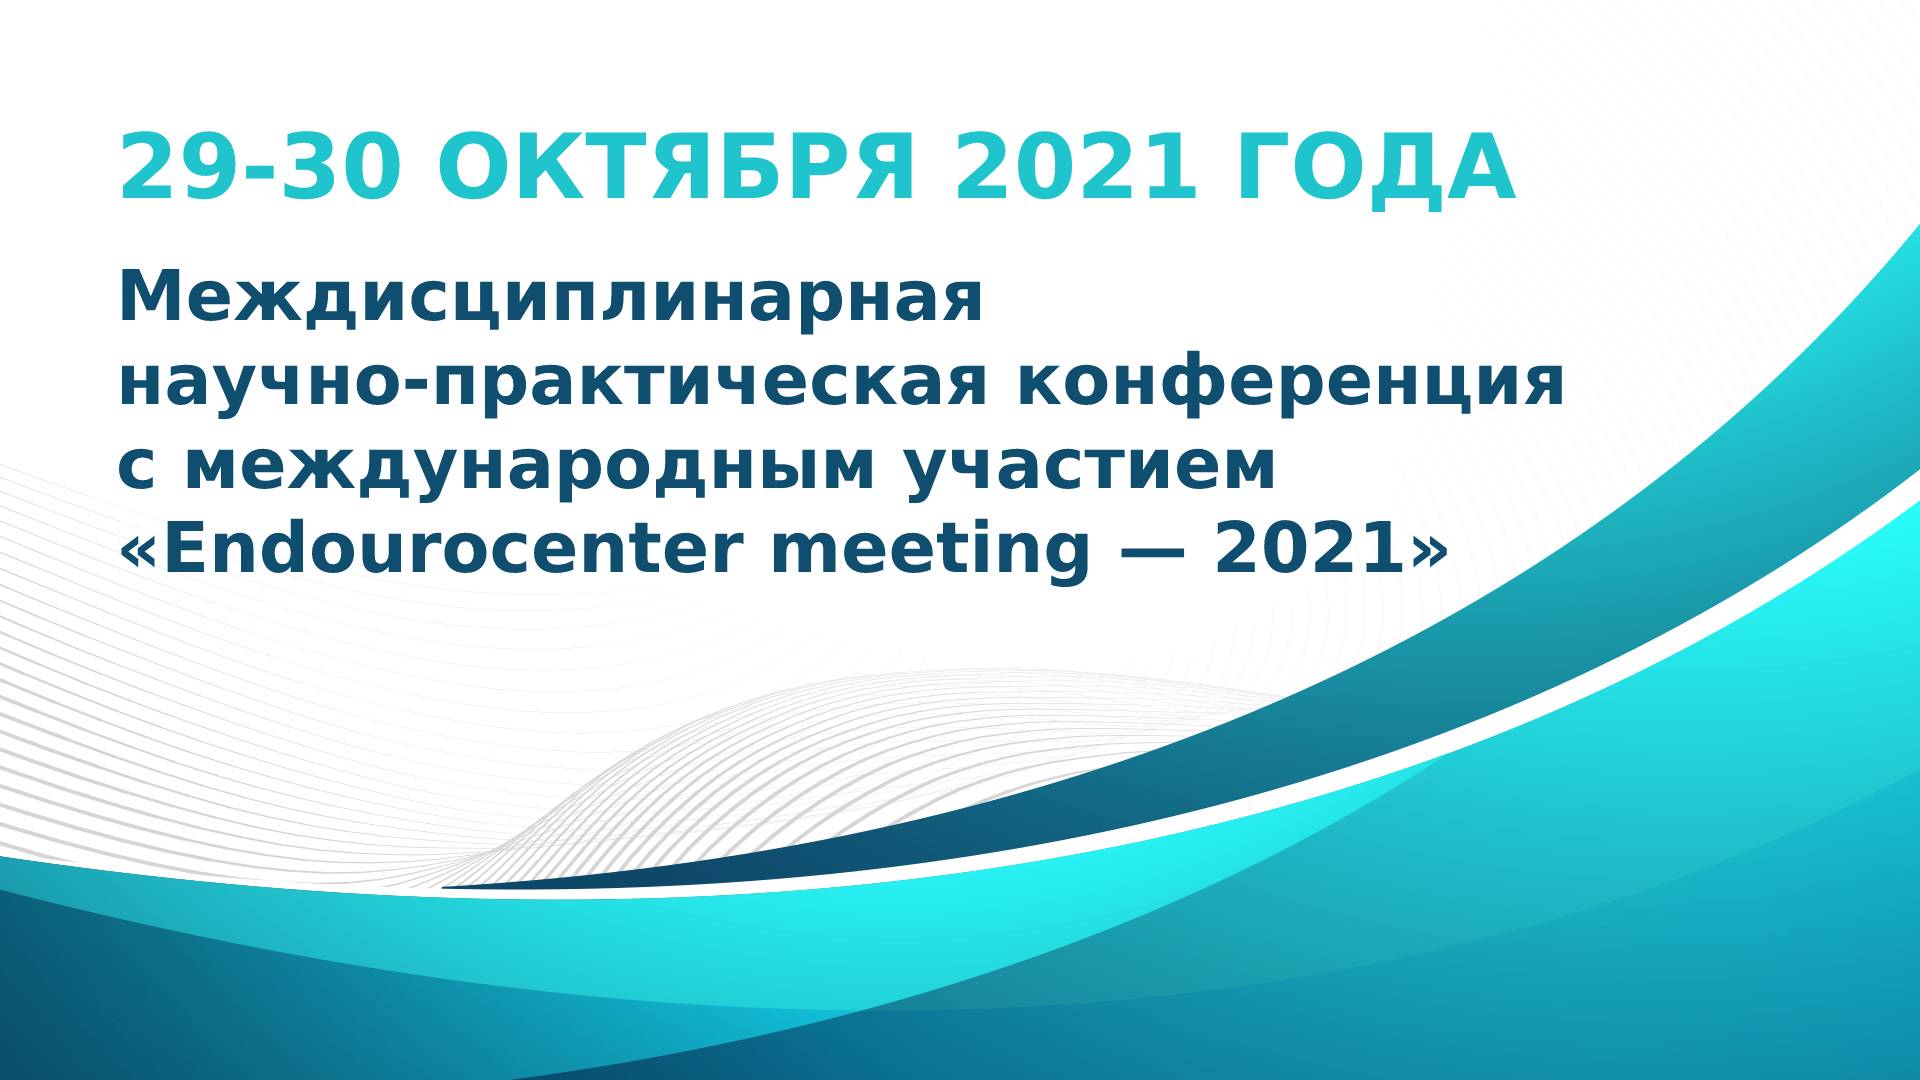 Ждем вас на Междисциплинарной научно-практической конференции с международным участием «Endourocenter meeting - 2021»! - НПФ "МФС"